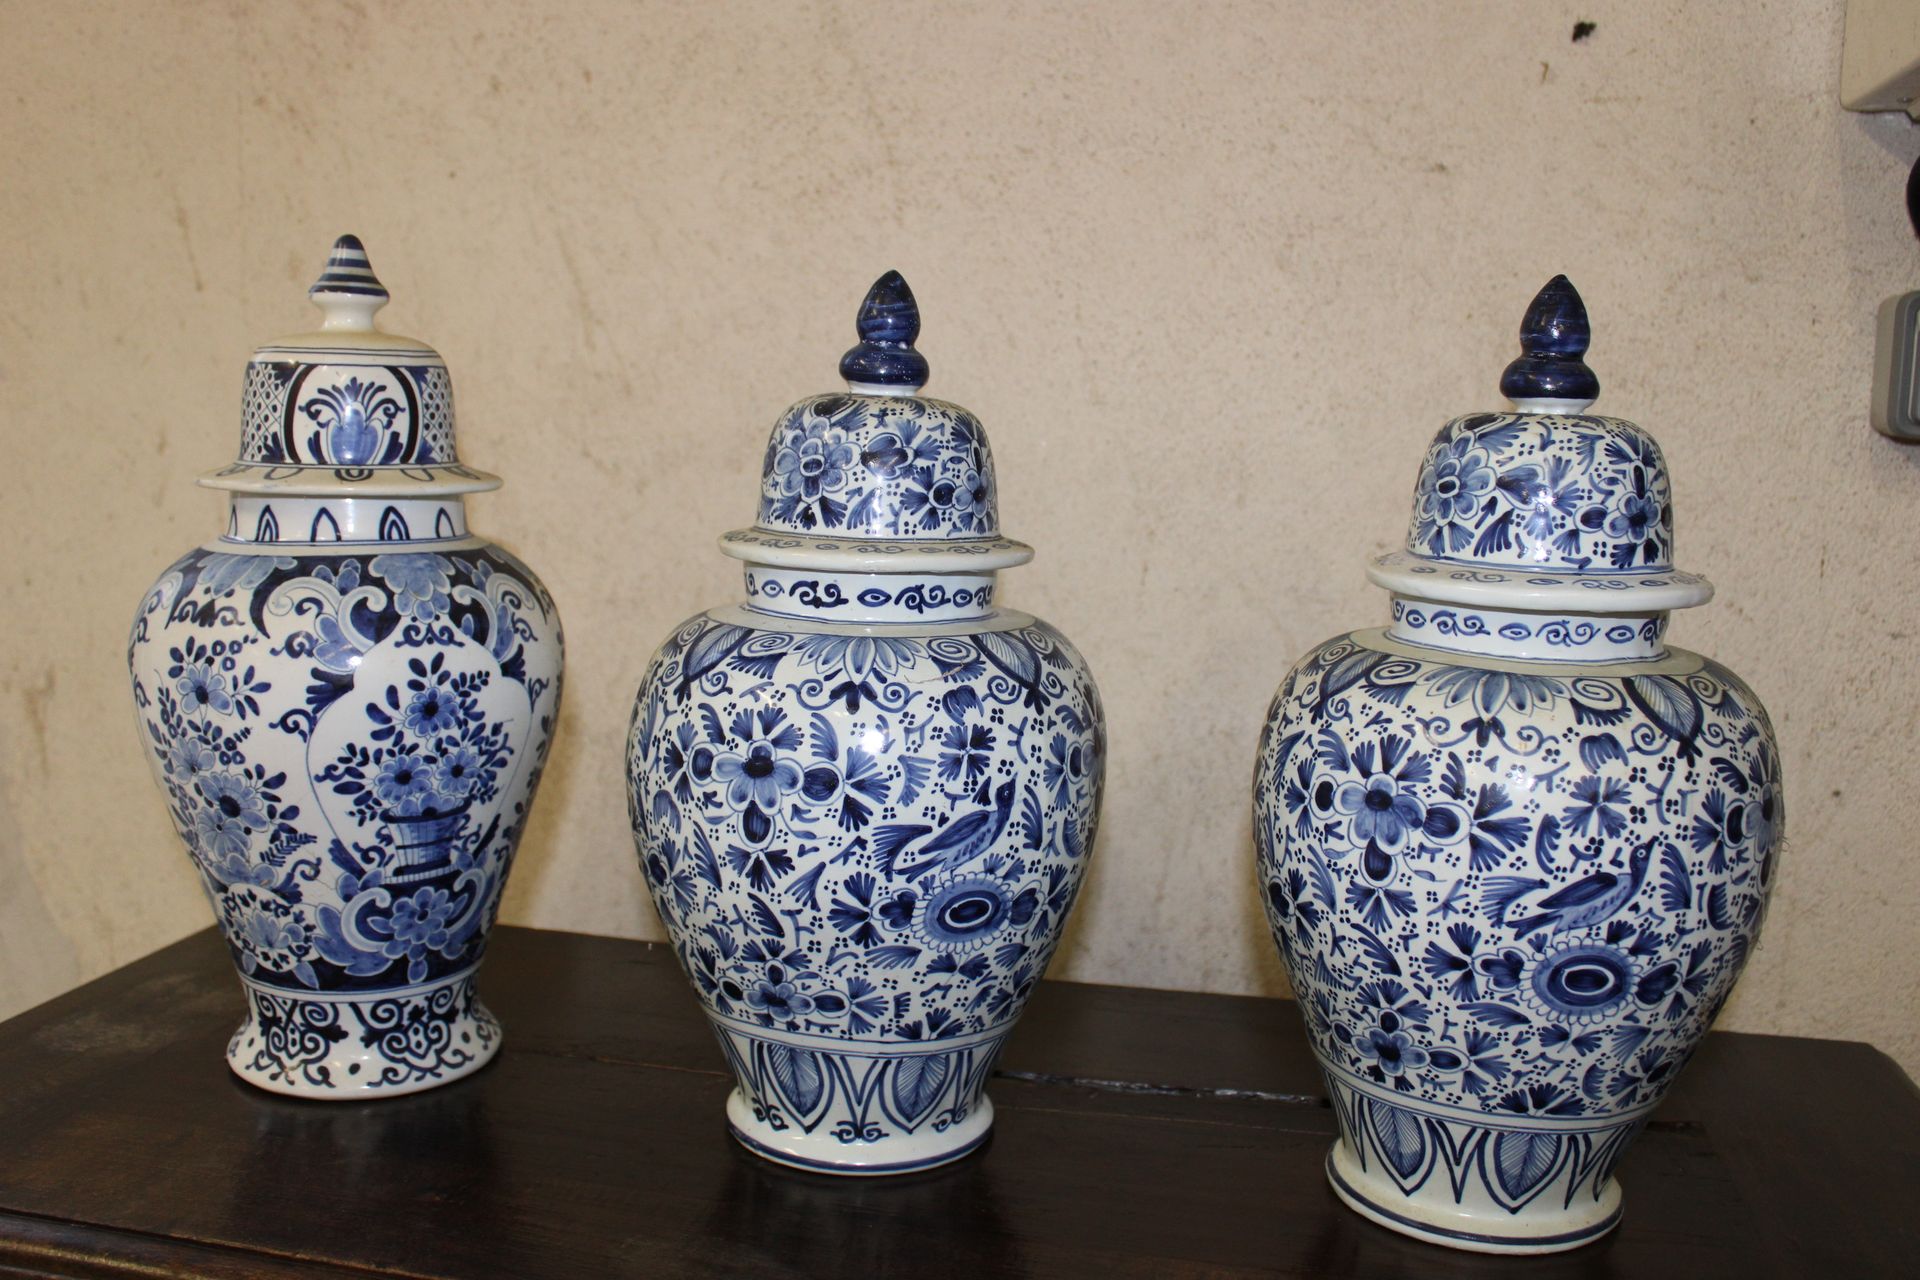 Null 
Tre urne in ceramica con fiori blu: una di 26x19 e le altre due di 25x19.